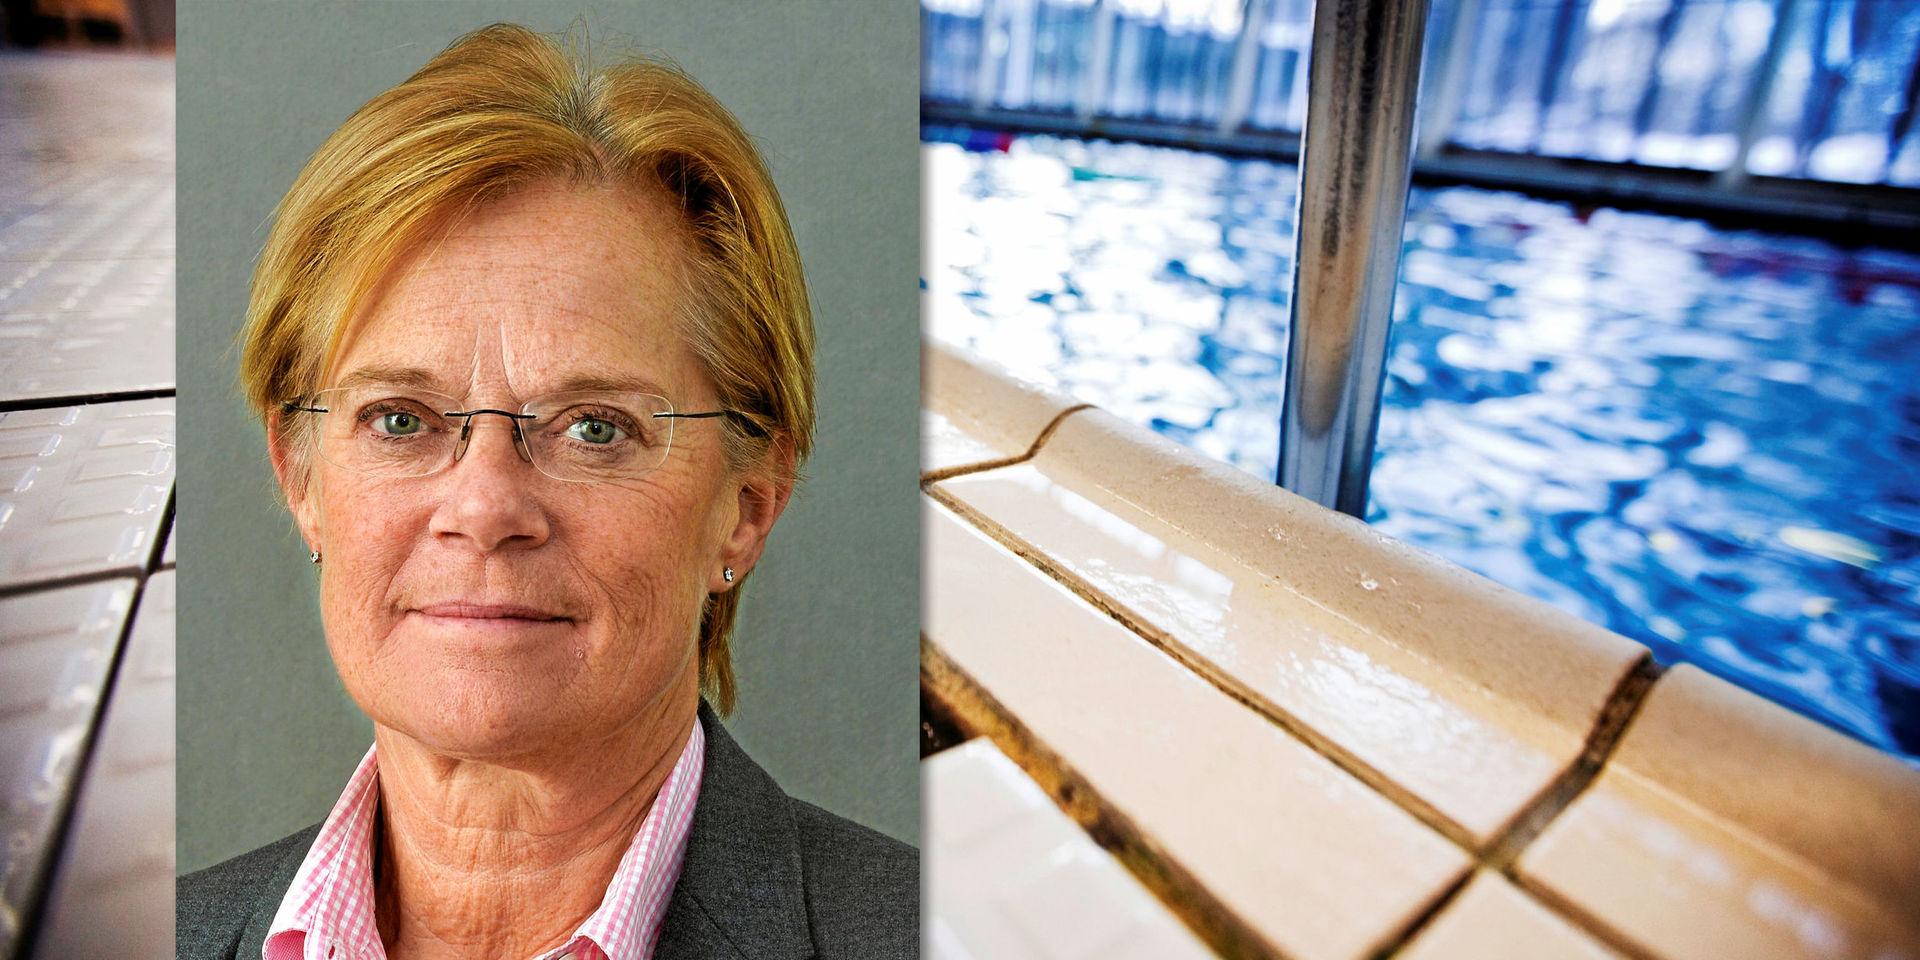 Simhall. Byggmarknaden är ”het” och det byggs en hel del simhallar i Sverige nu, skriver Ann-Charlotte Stenkil (M).